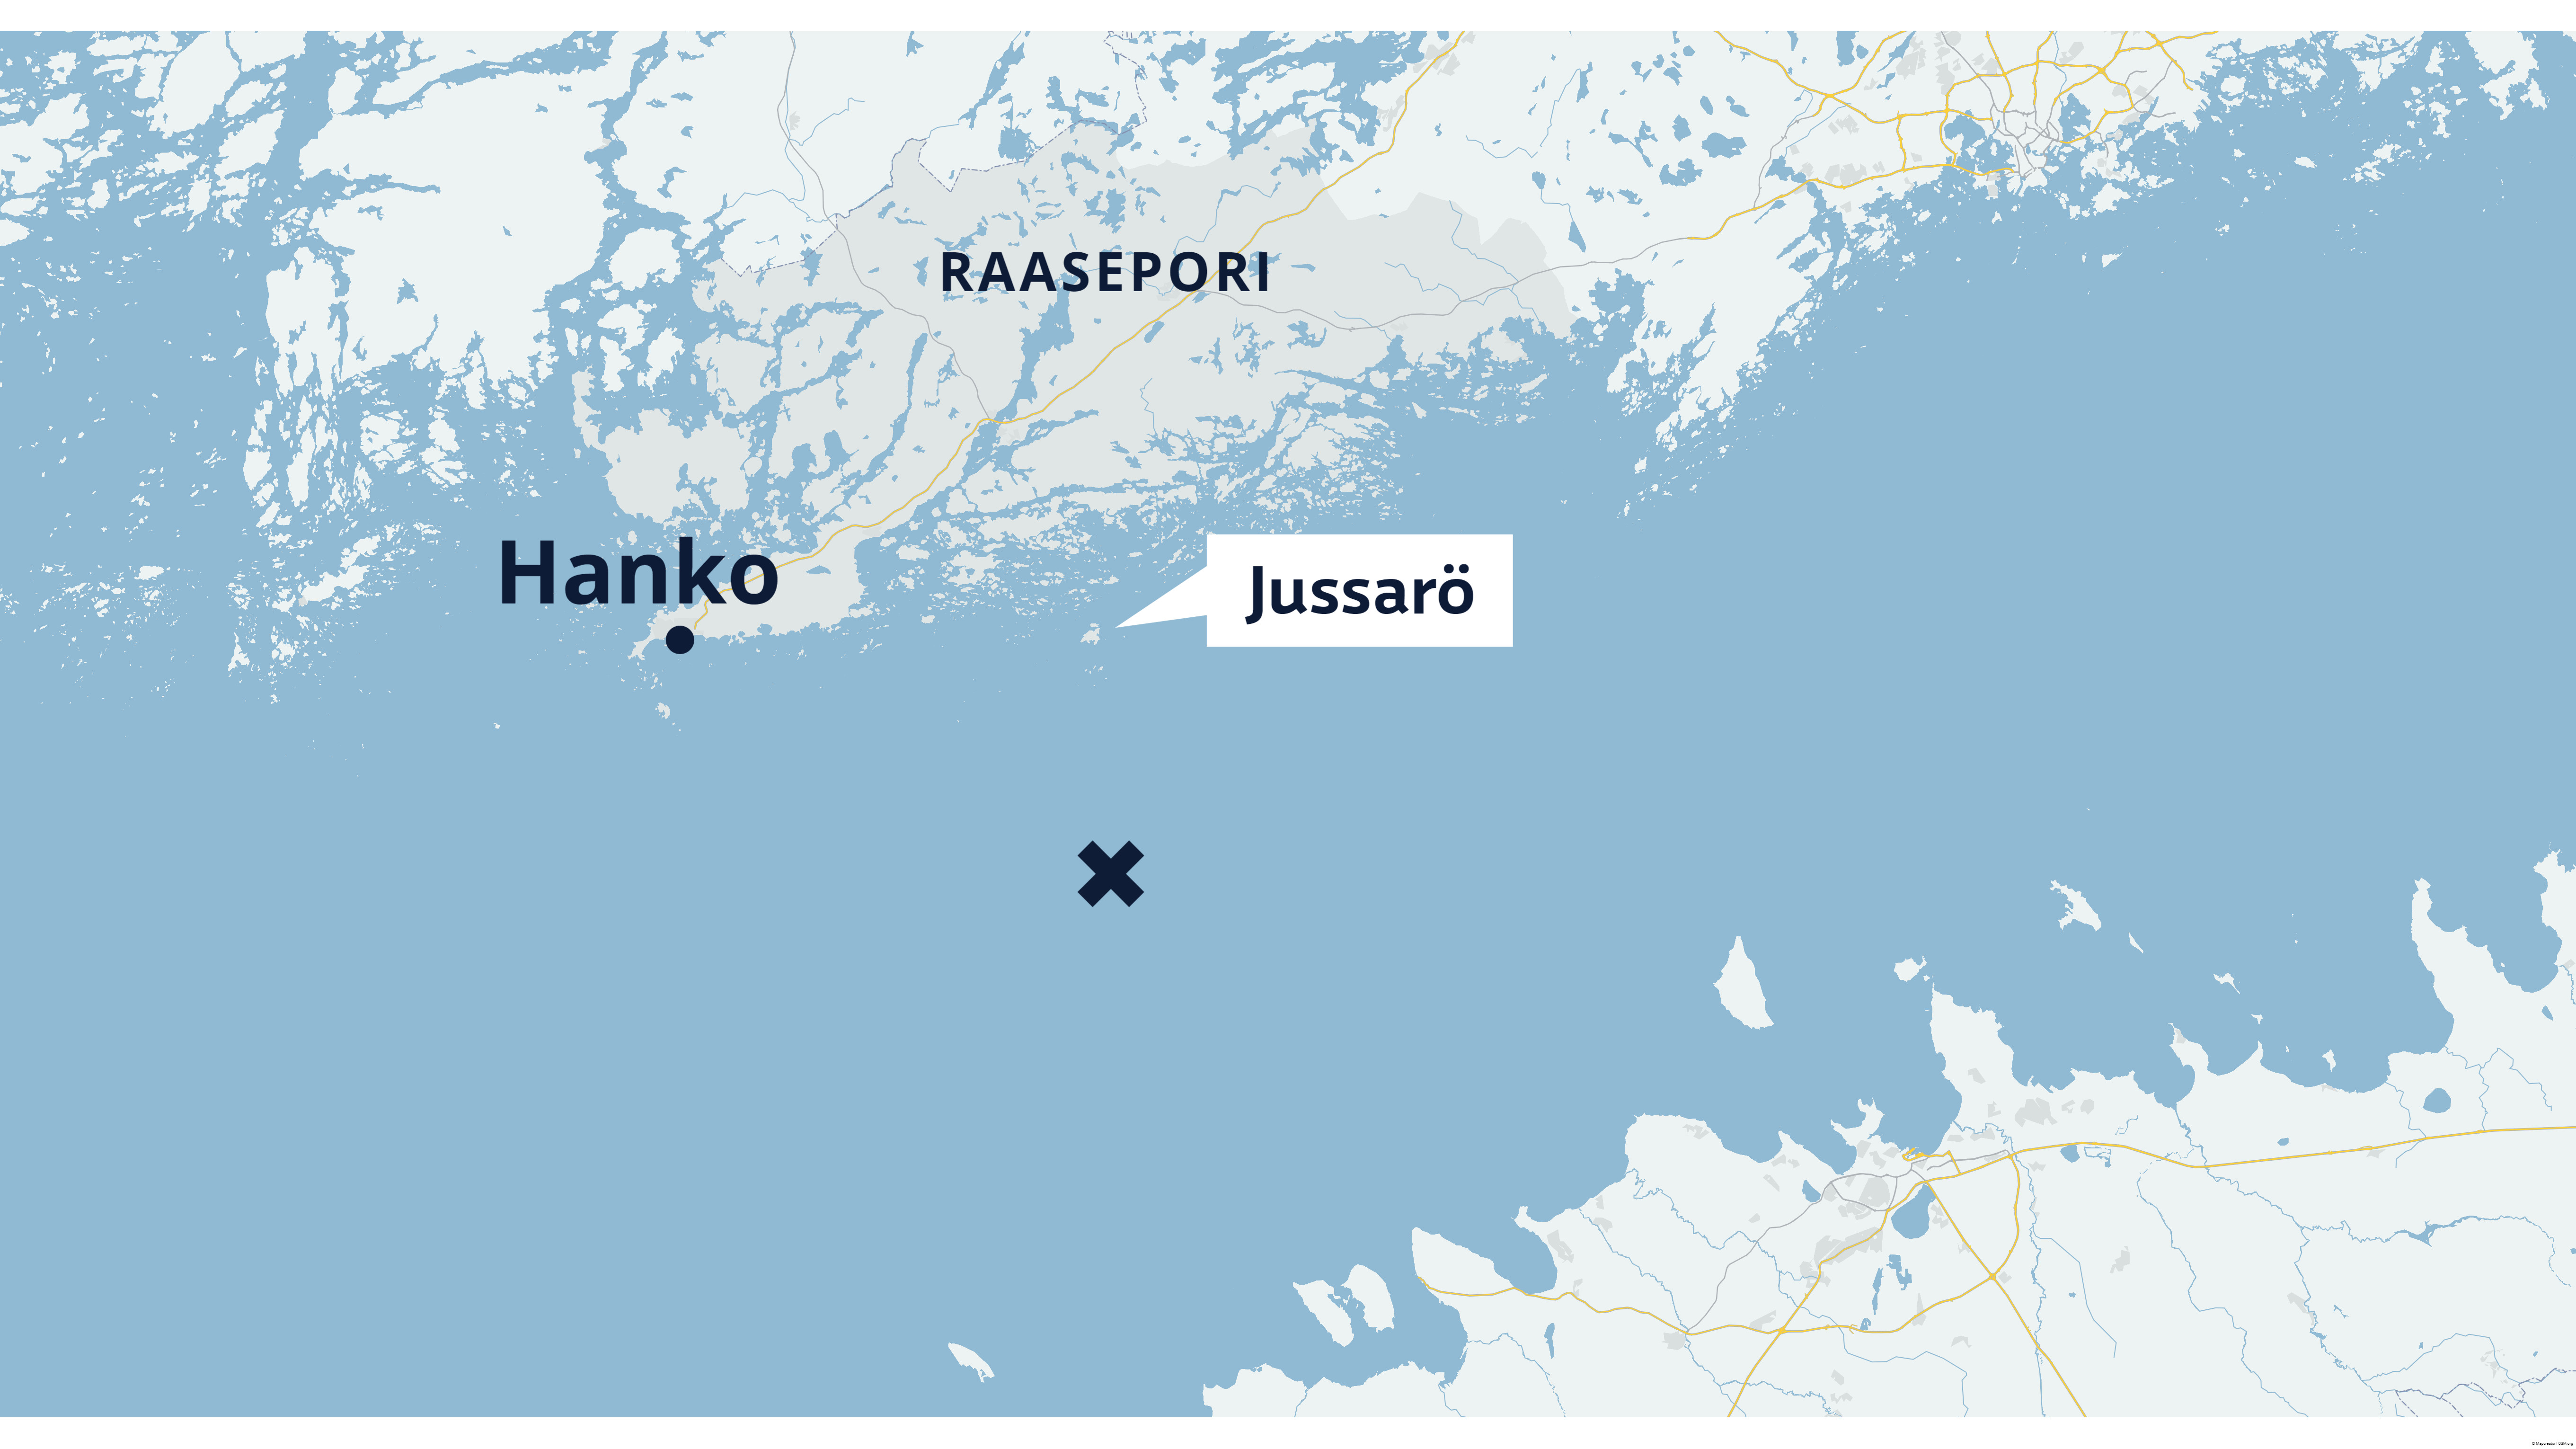 Ein Brand auf einem Schiff mit brennbaren Flüssigkeiten im Finnischen Meerbusen